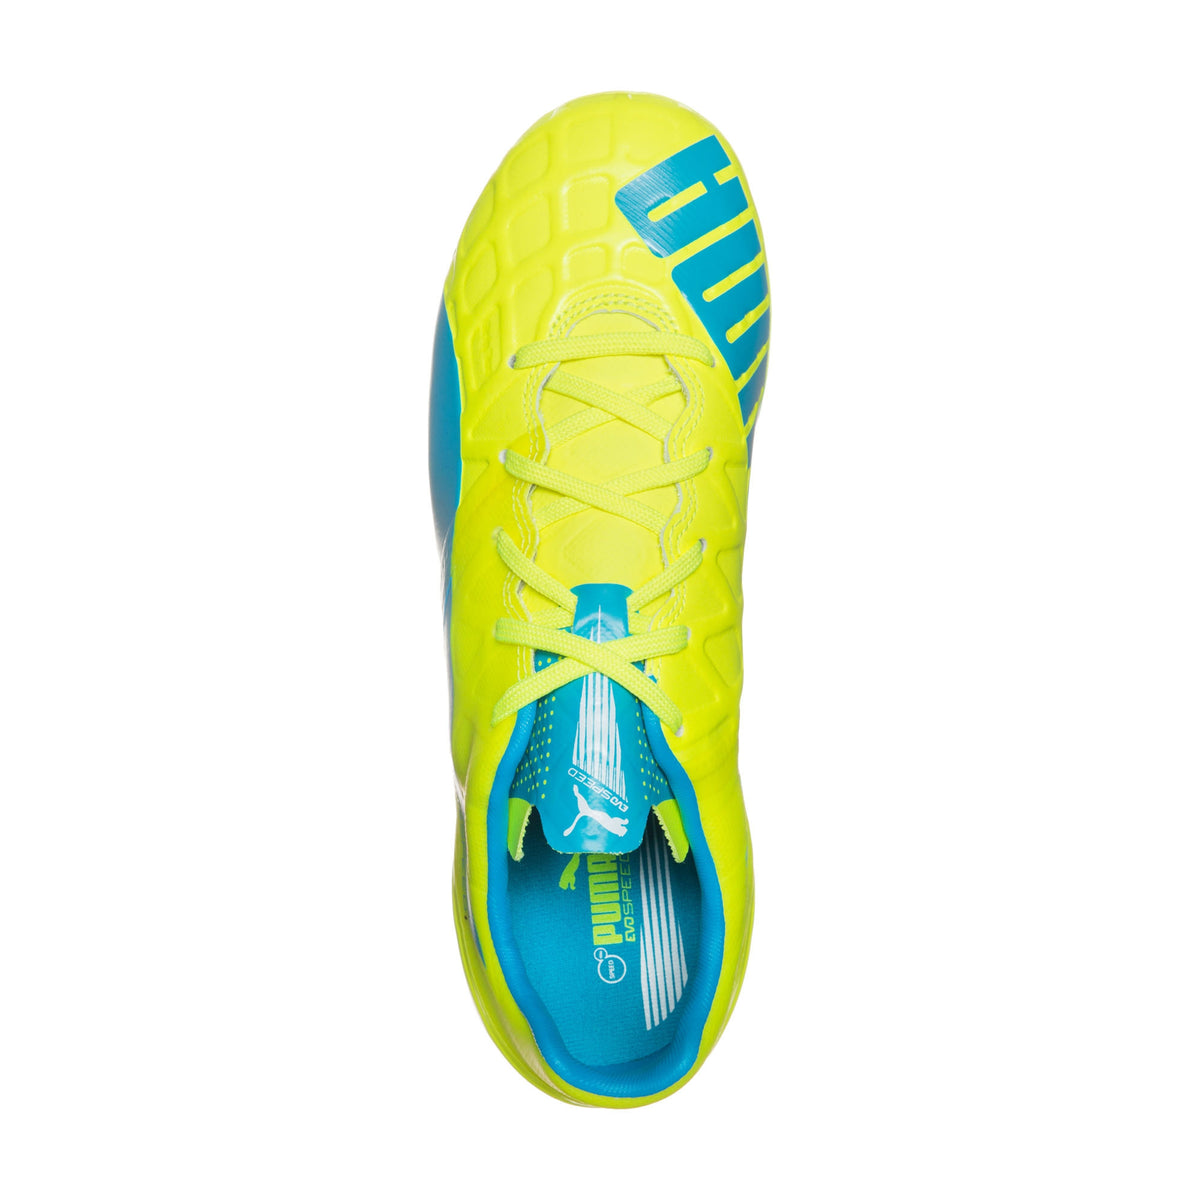 Puma evoSPEED 1.4 FG Junior chaussure de soccer enfant jaune bleu uv